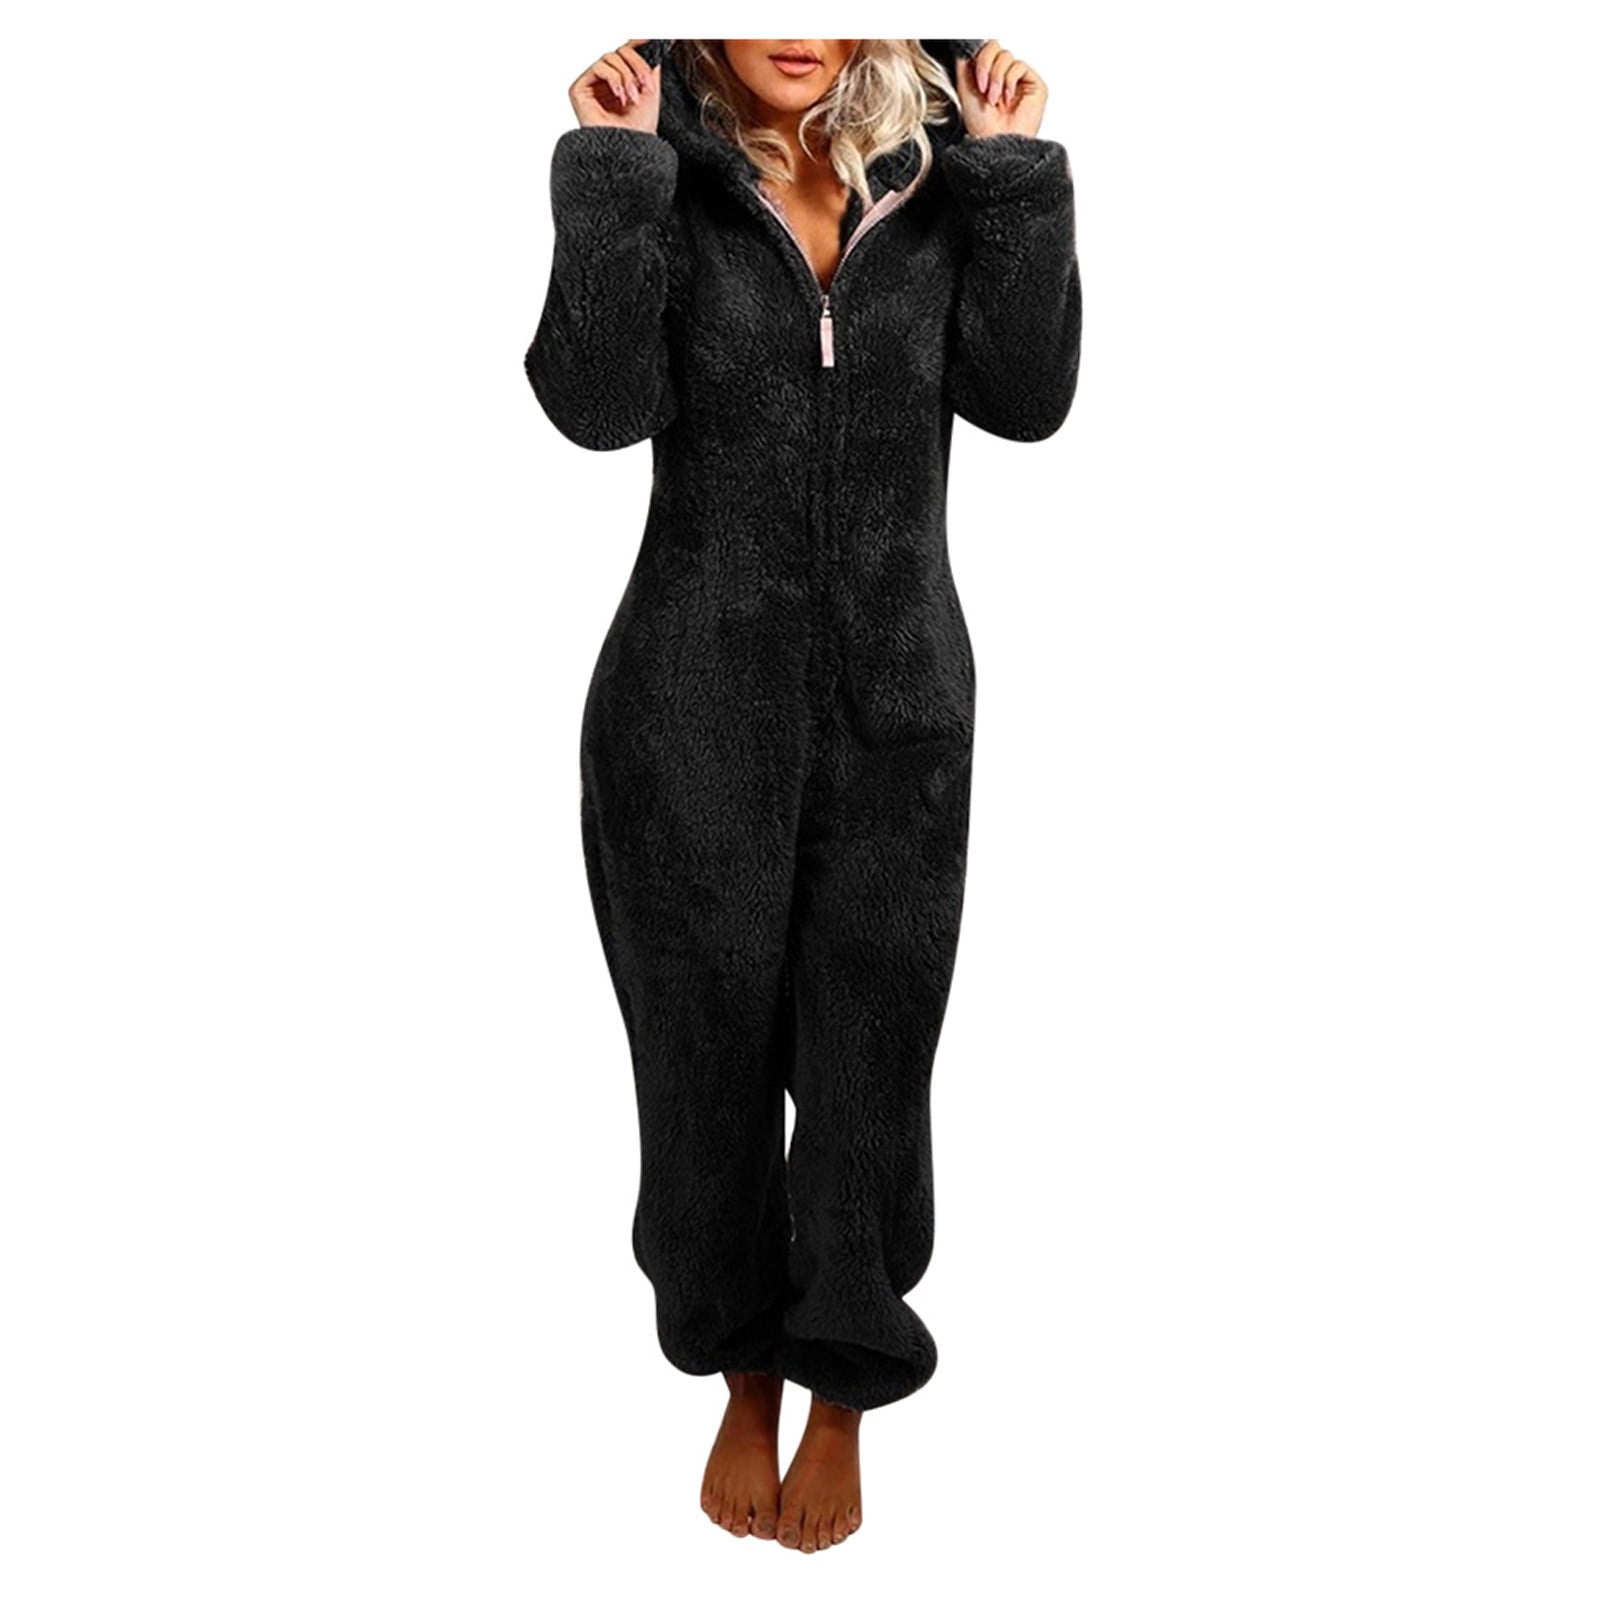 Women's Pajamas Plush Hooded Jumpsuit Casual Winter Warm Long Sleeve Fleece Cute Bear Ear Cap Romper Sleepwear 